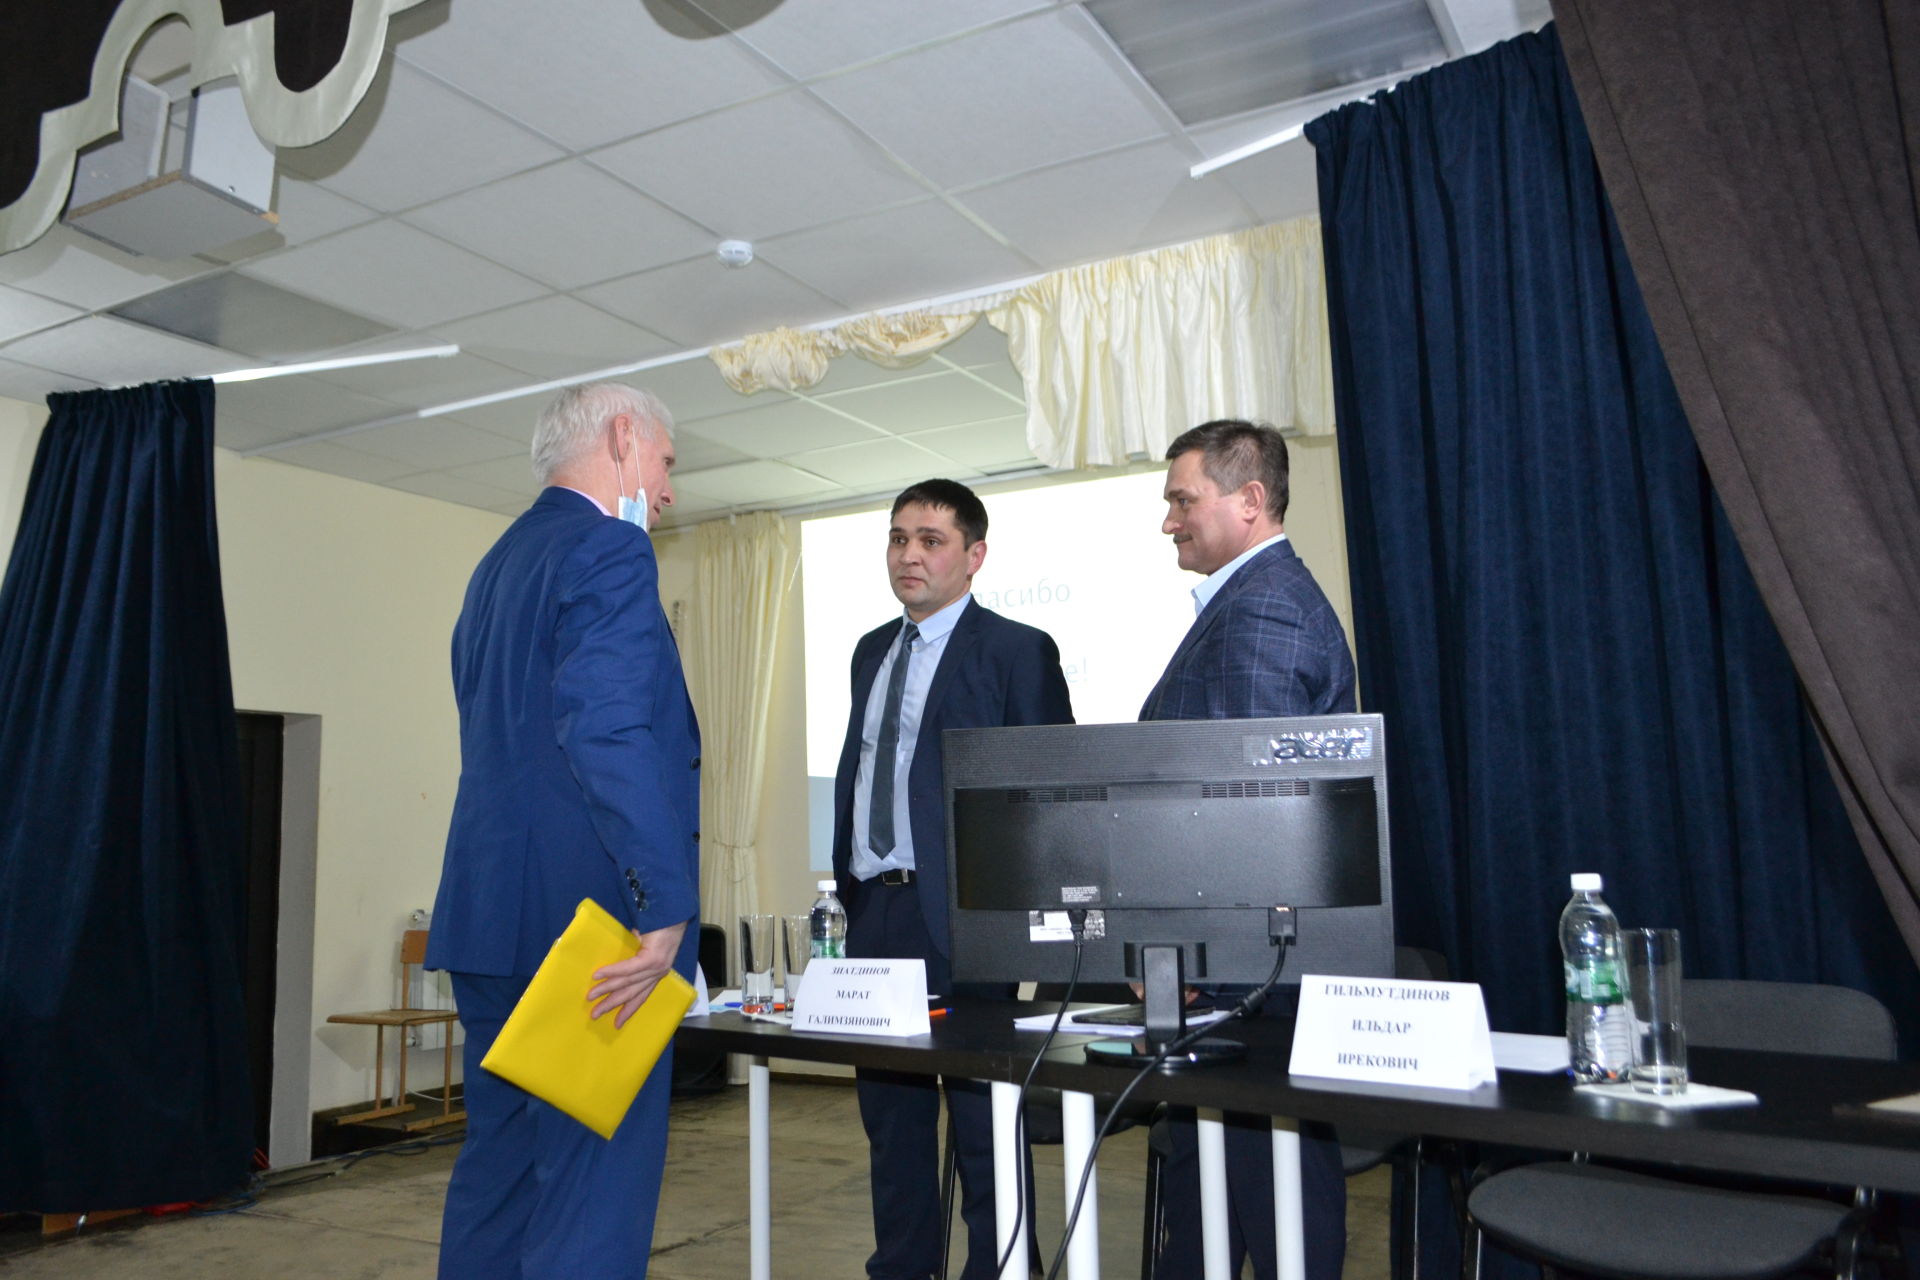 Марат Зиатдинов отметил положительную работу Набережноморквашского поселения